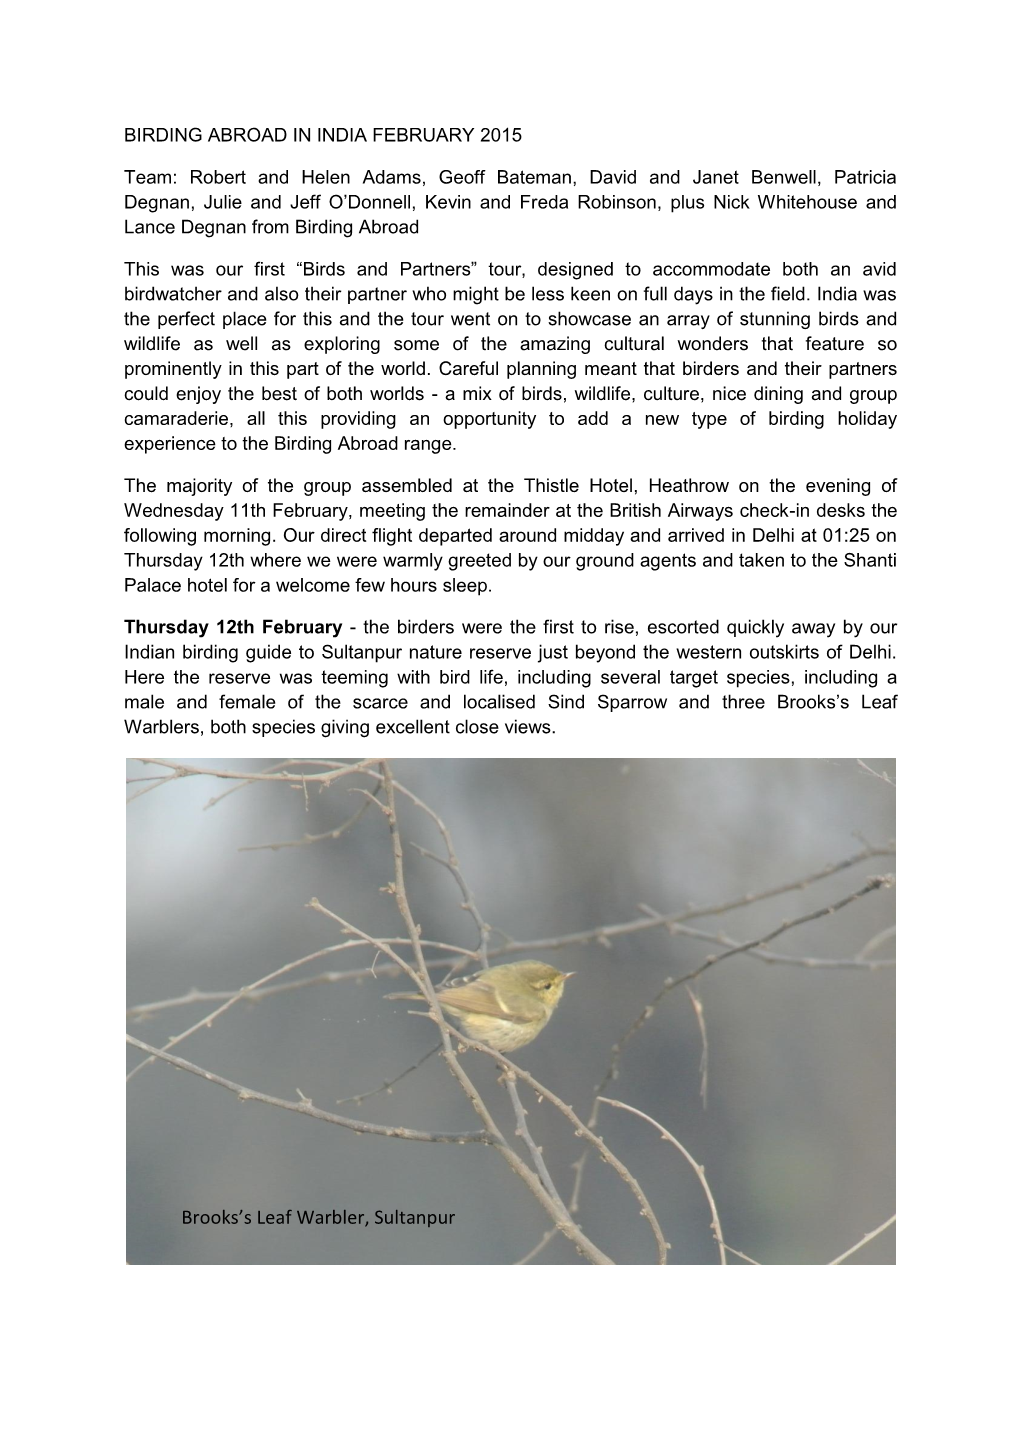 Brooks's Leaf Warbler, Sultanpur